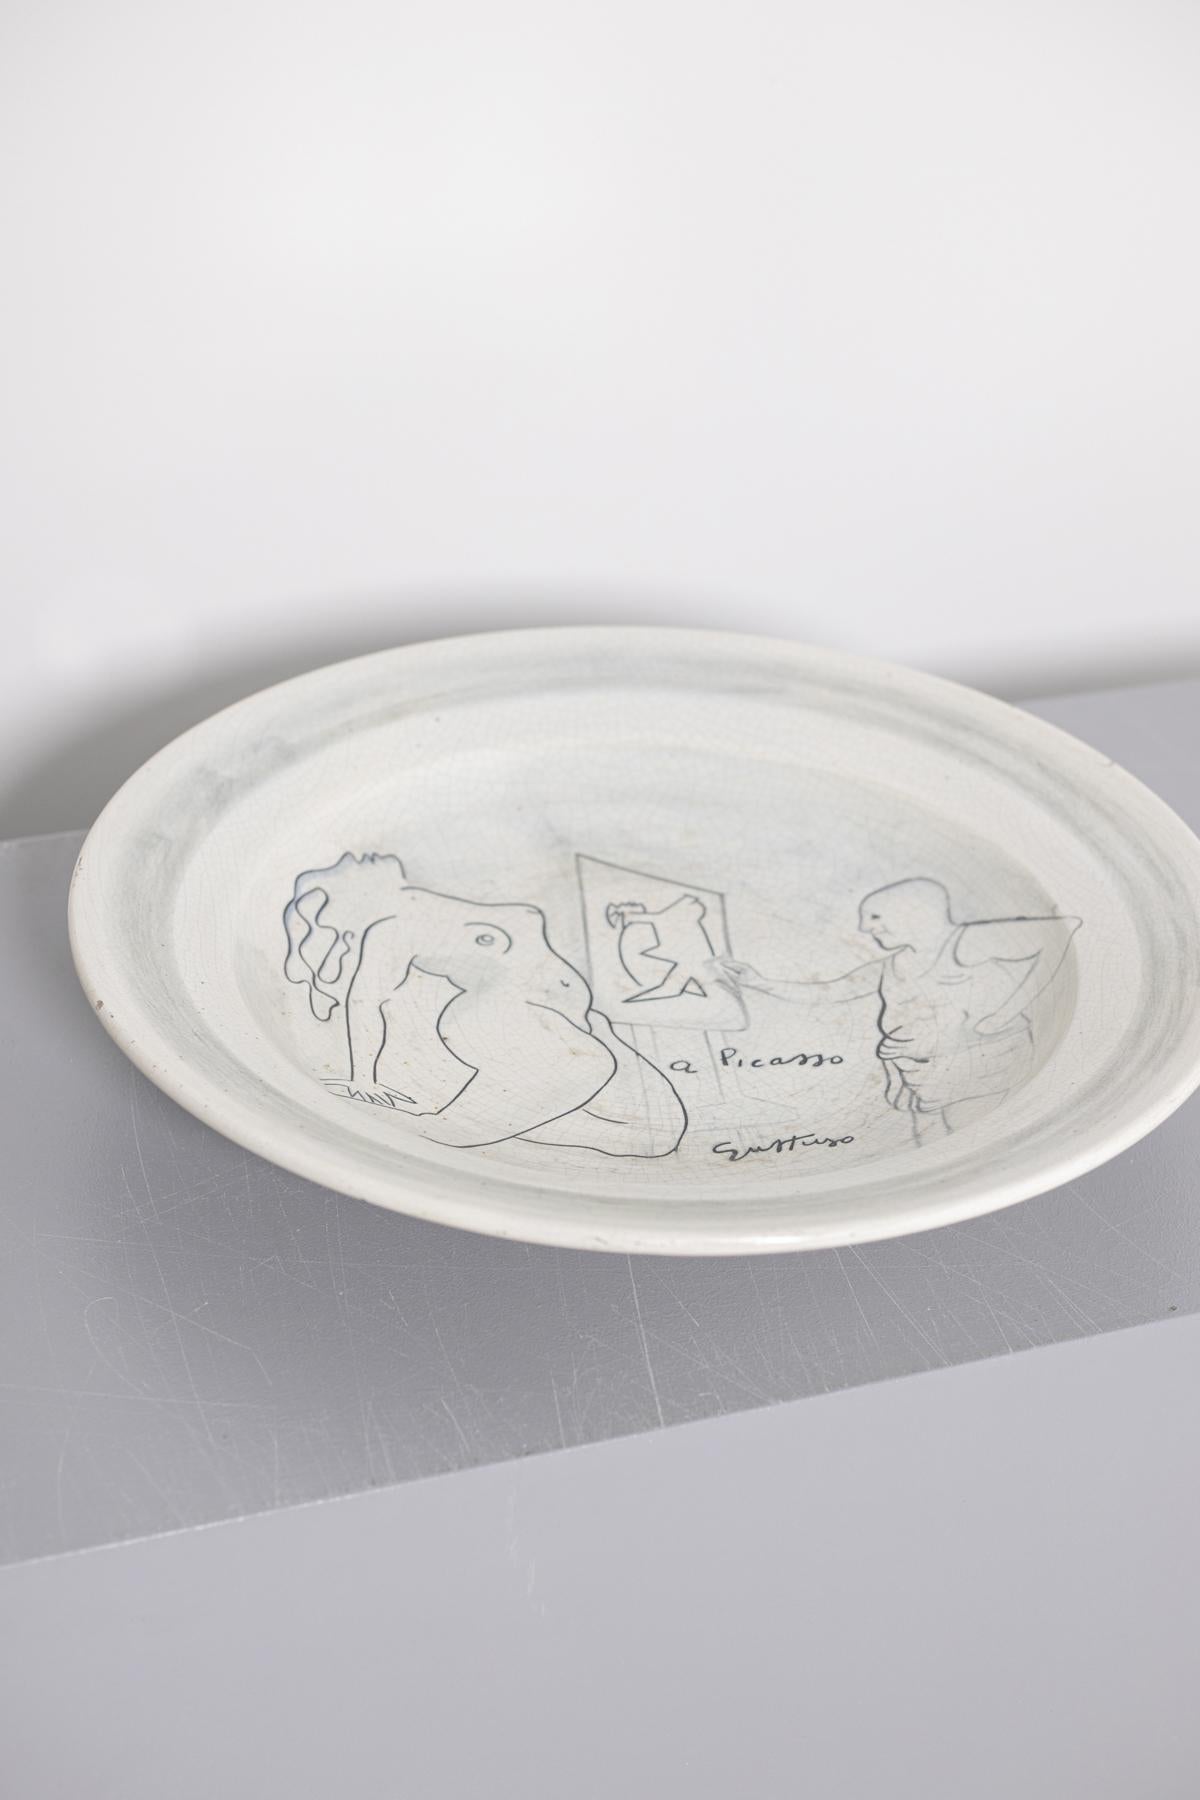 Renato Guttuso Ceramic Centre Dish as a Homage to Picasso, Numerd, 1980s 5